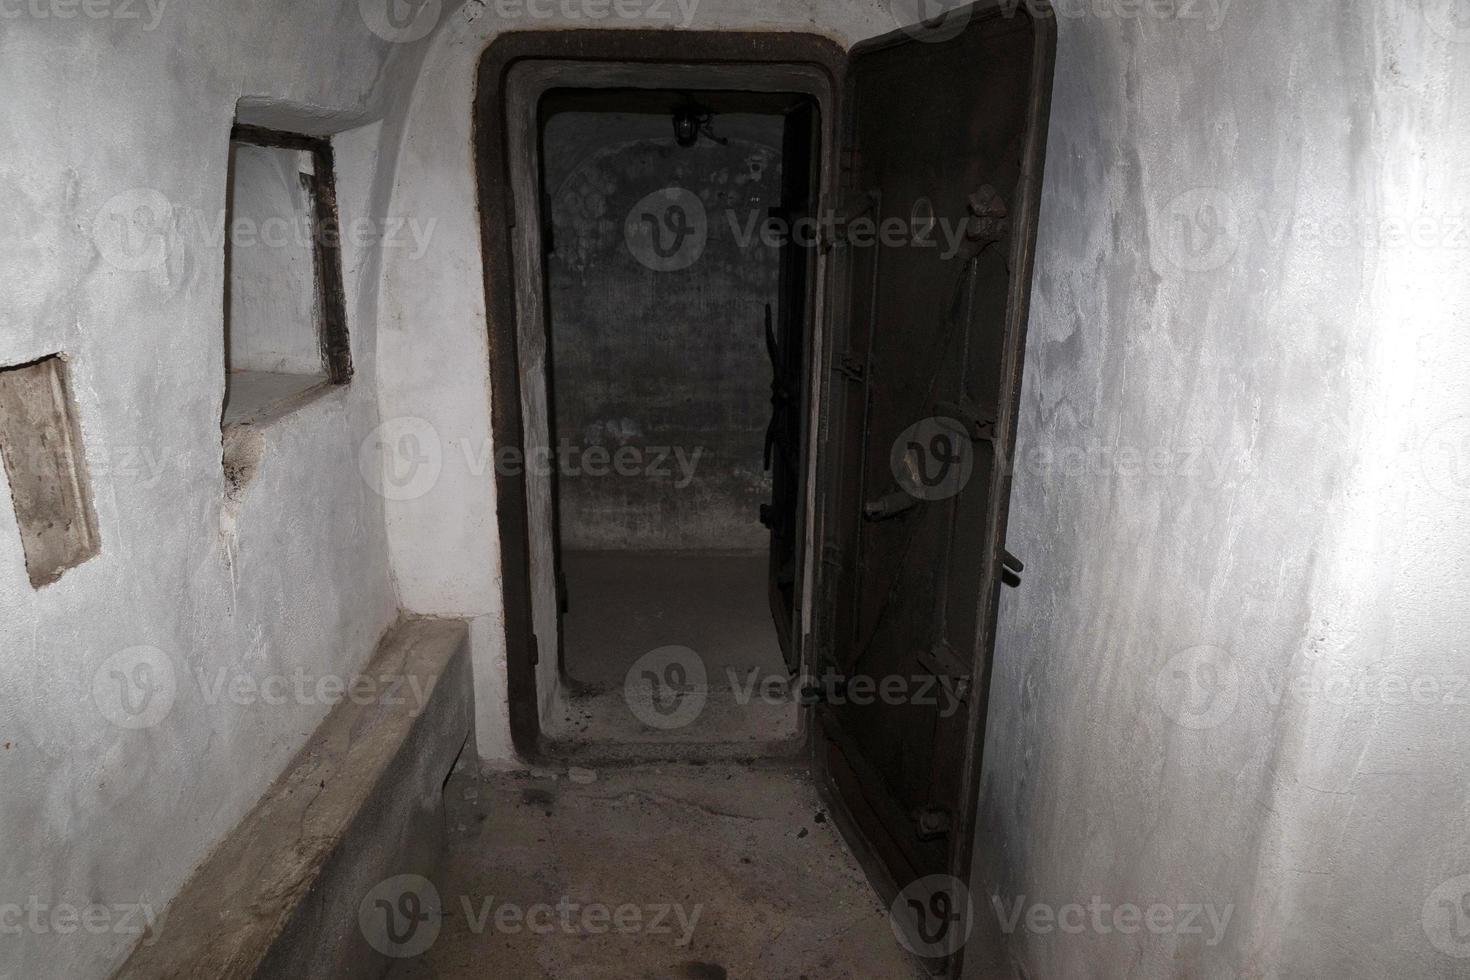 historical Bunker antigas door in rome photo